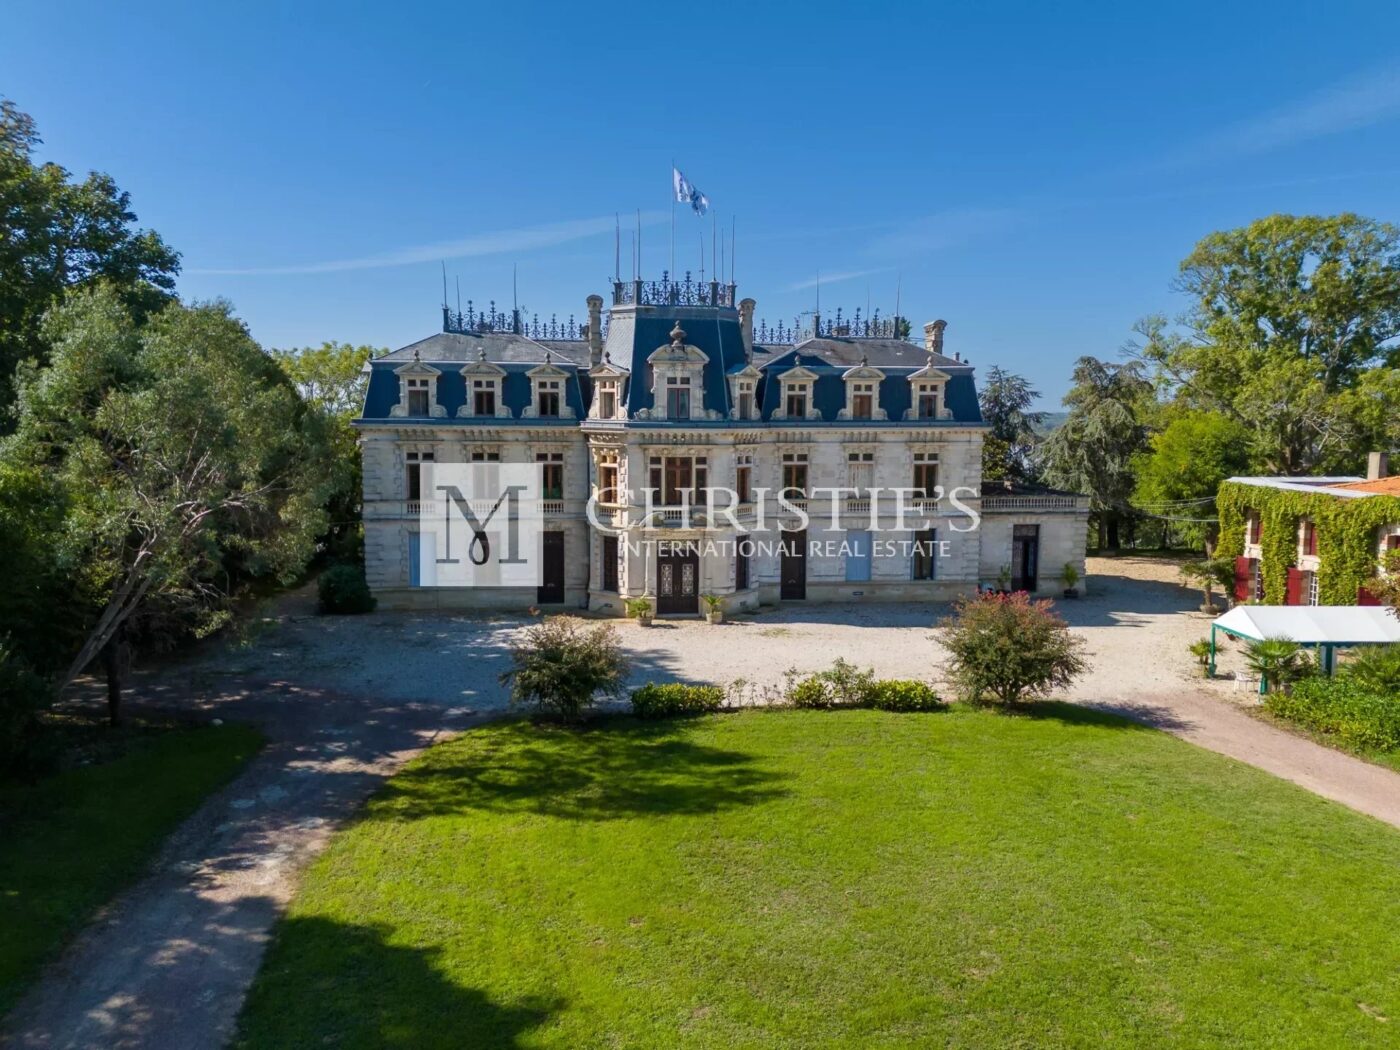 出售美丽的葡萄酒庄园， 19 世纪城堡拥有俯瞰多尔多涅省的壮丽景观- 葡萄酒旅游项目的理想选择